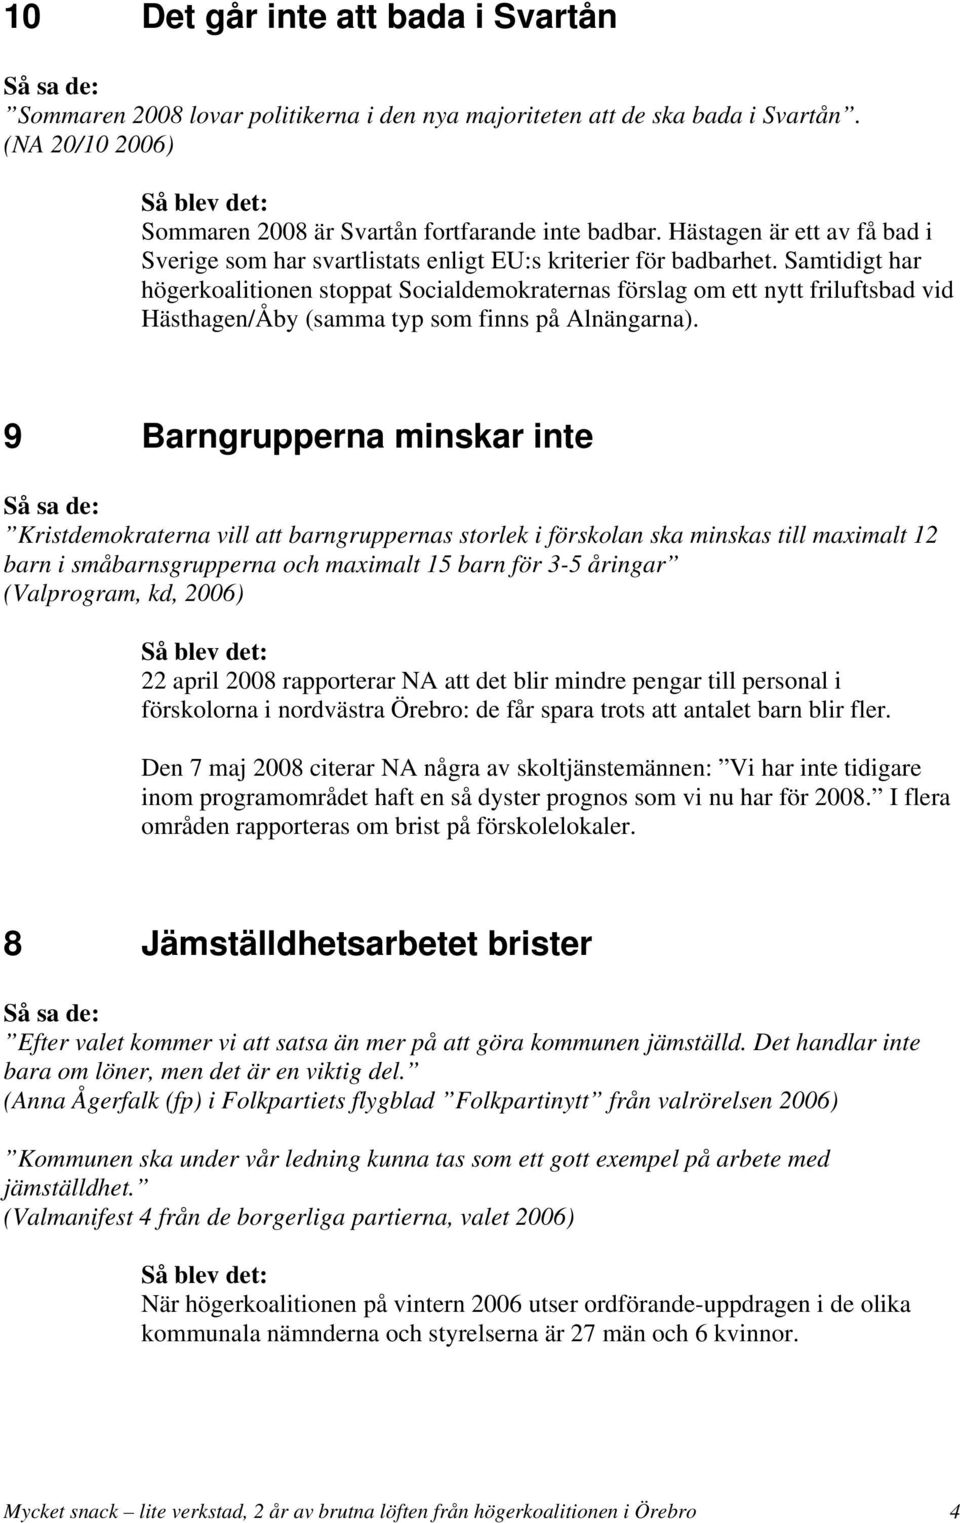 Samtidigt har högerkoalitionen stoppat Socialdemokraternas förslag om ett nytt friluftsbad vid Hästhagen/Åby (samma typ som finns på Alnängarna).